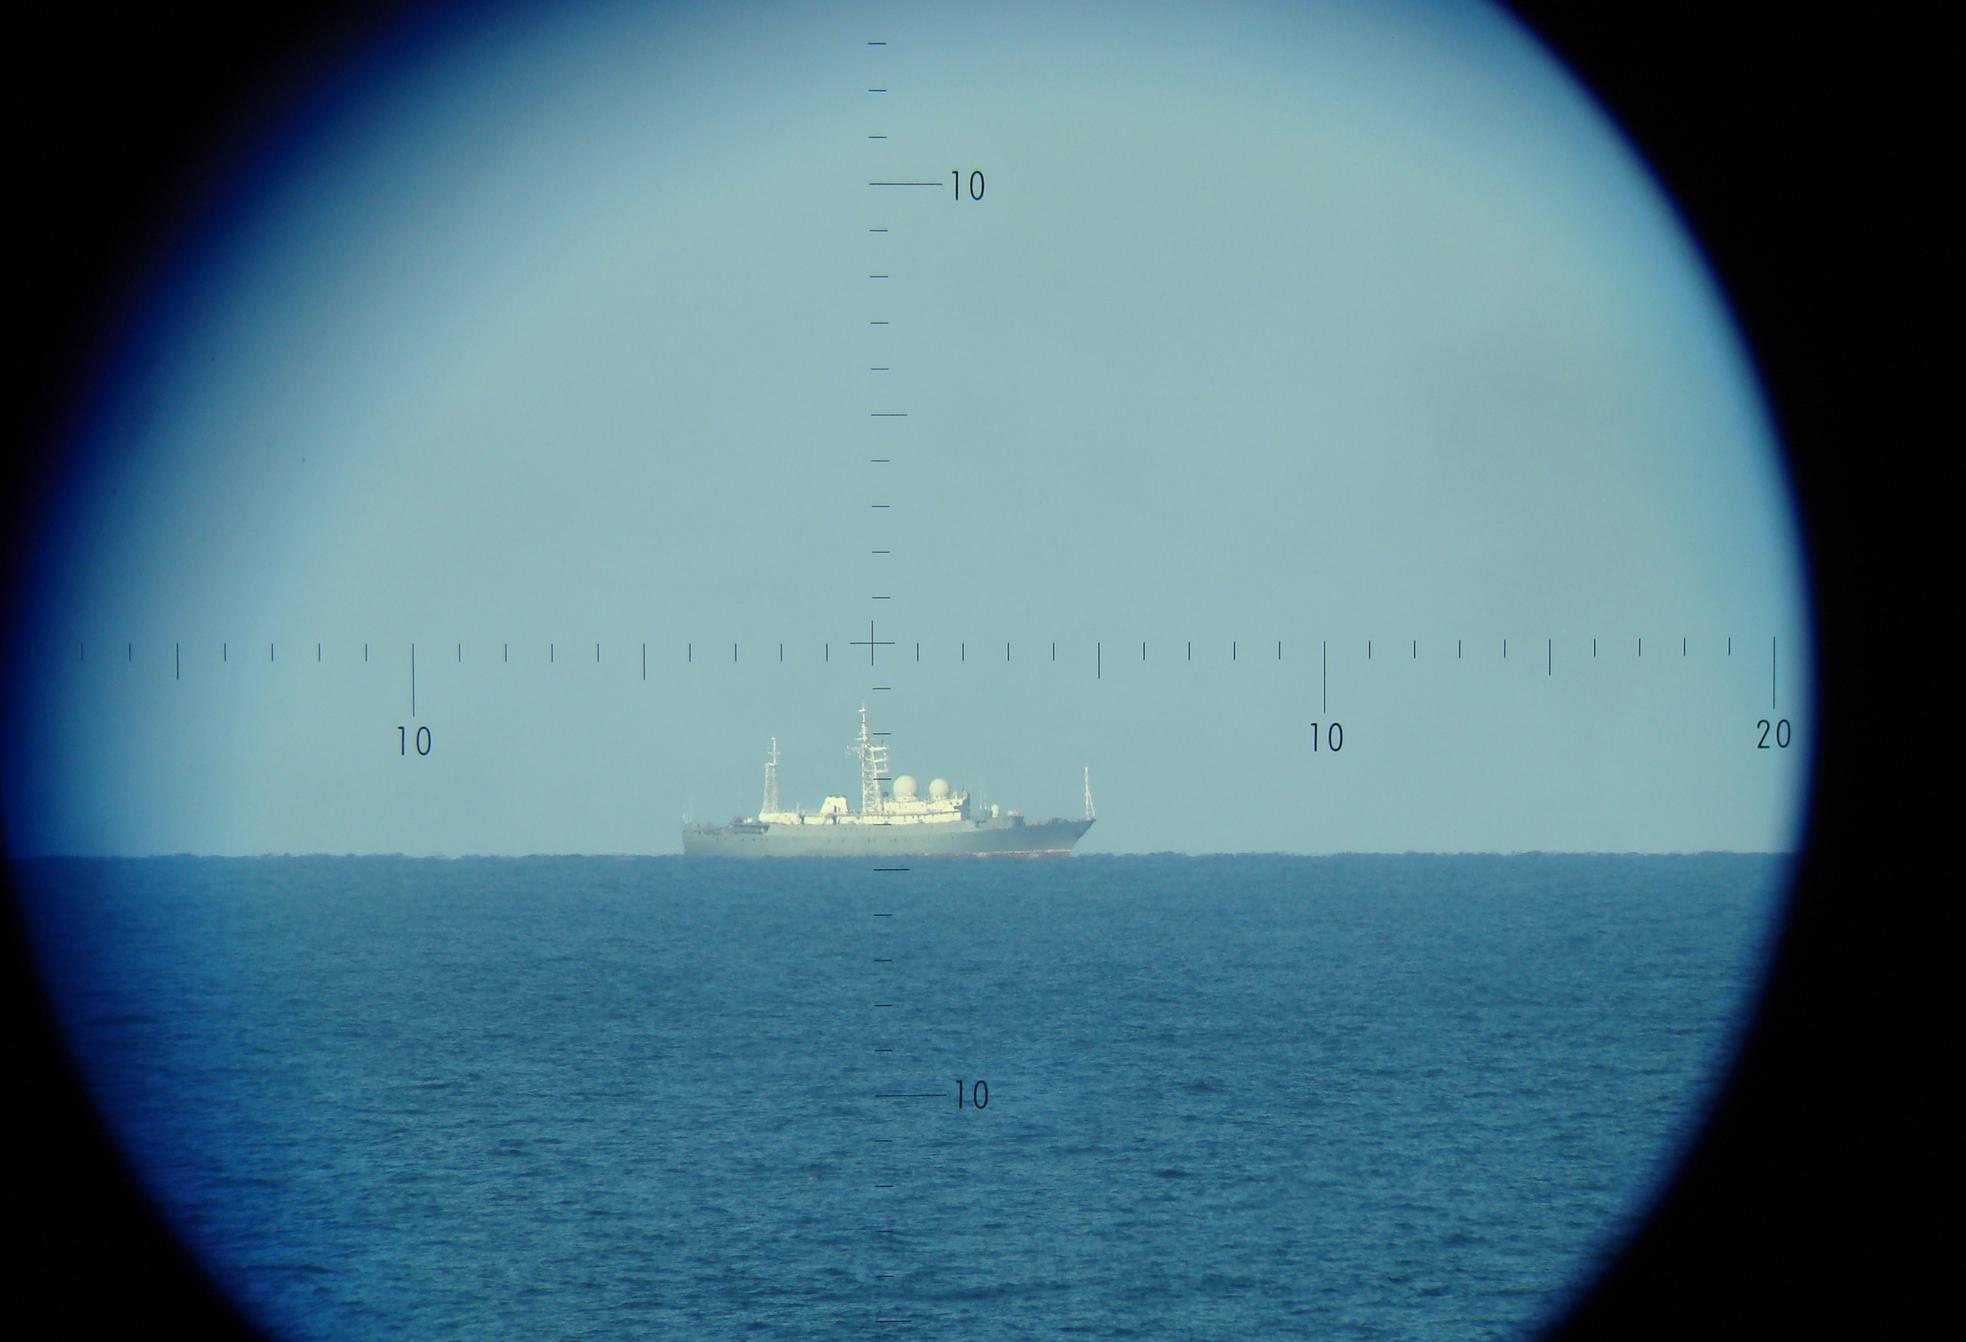 Méditerranée occidentale – Surveillance d’un bâtiment collecteur de renseignements russe dans les approches maritimes françaises